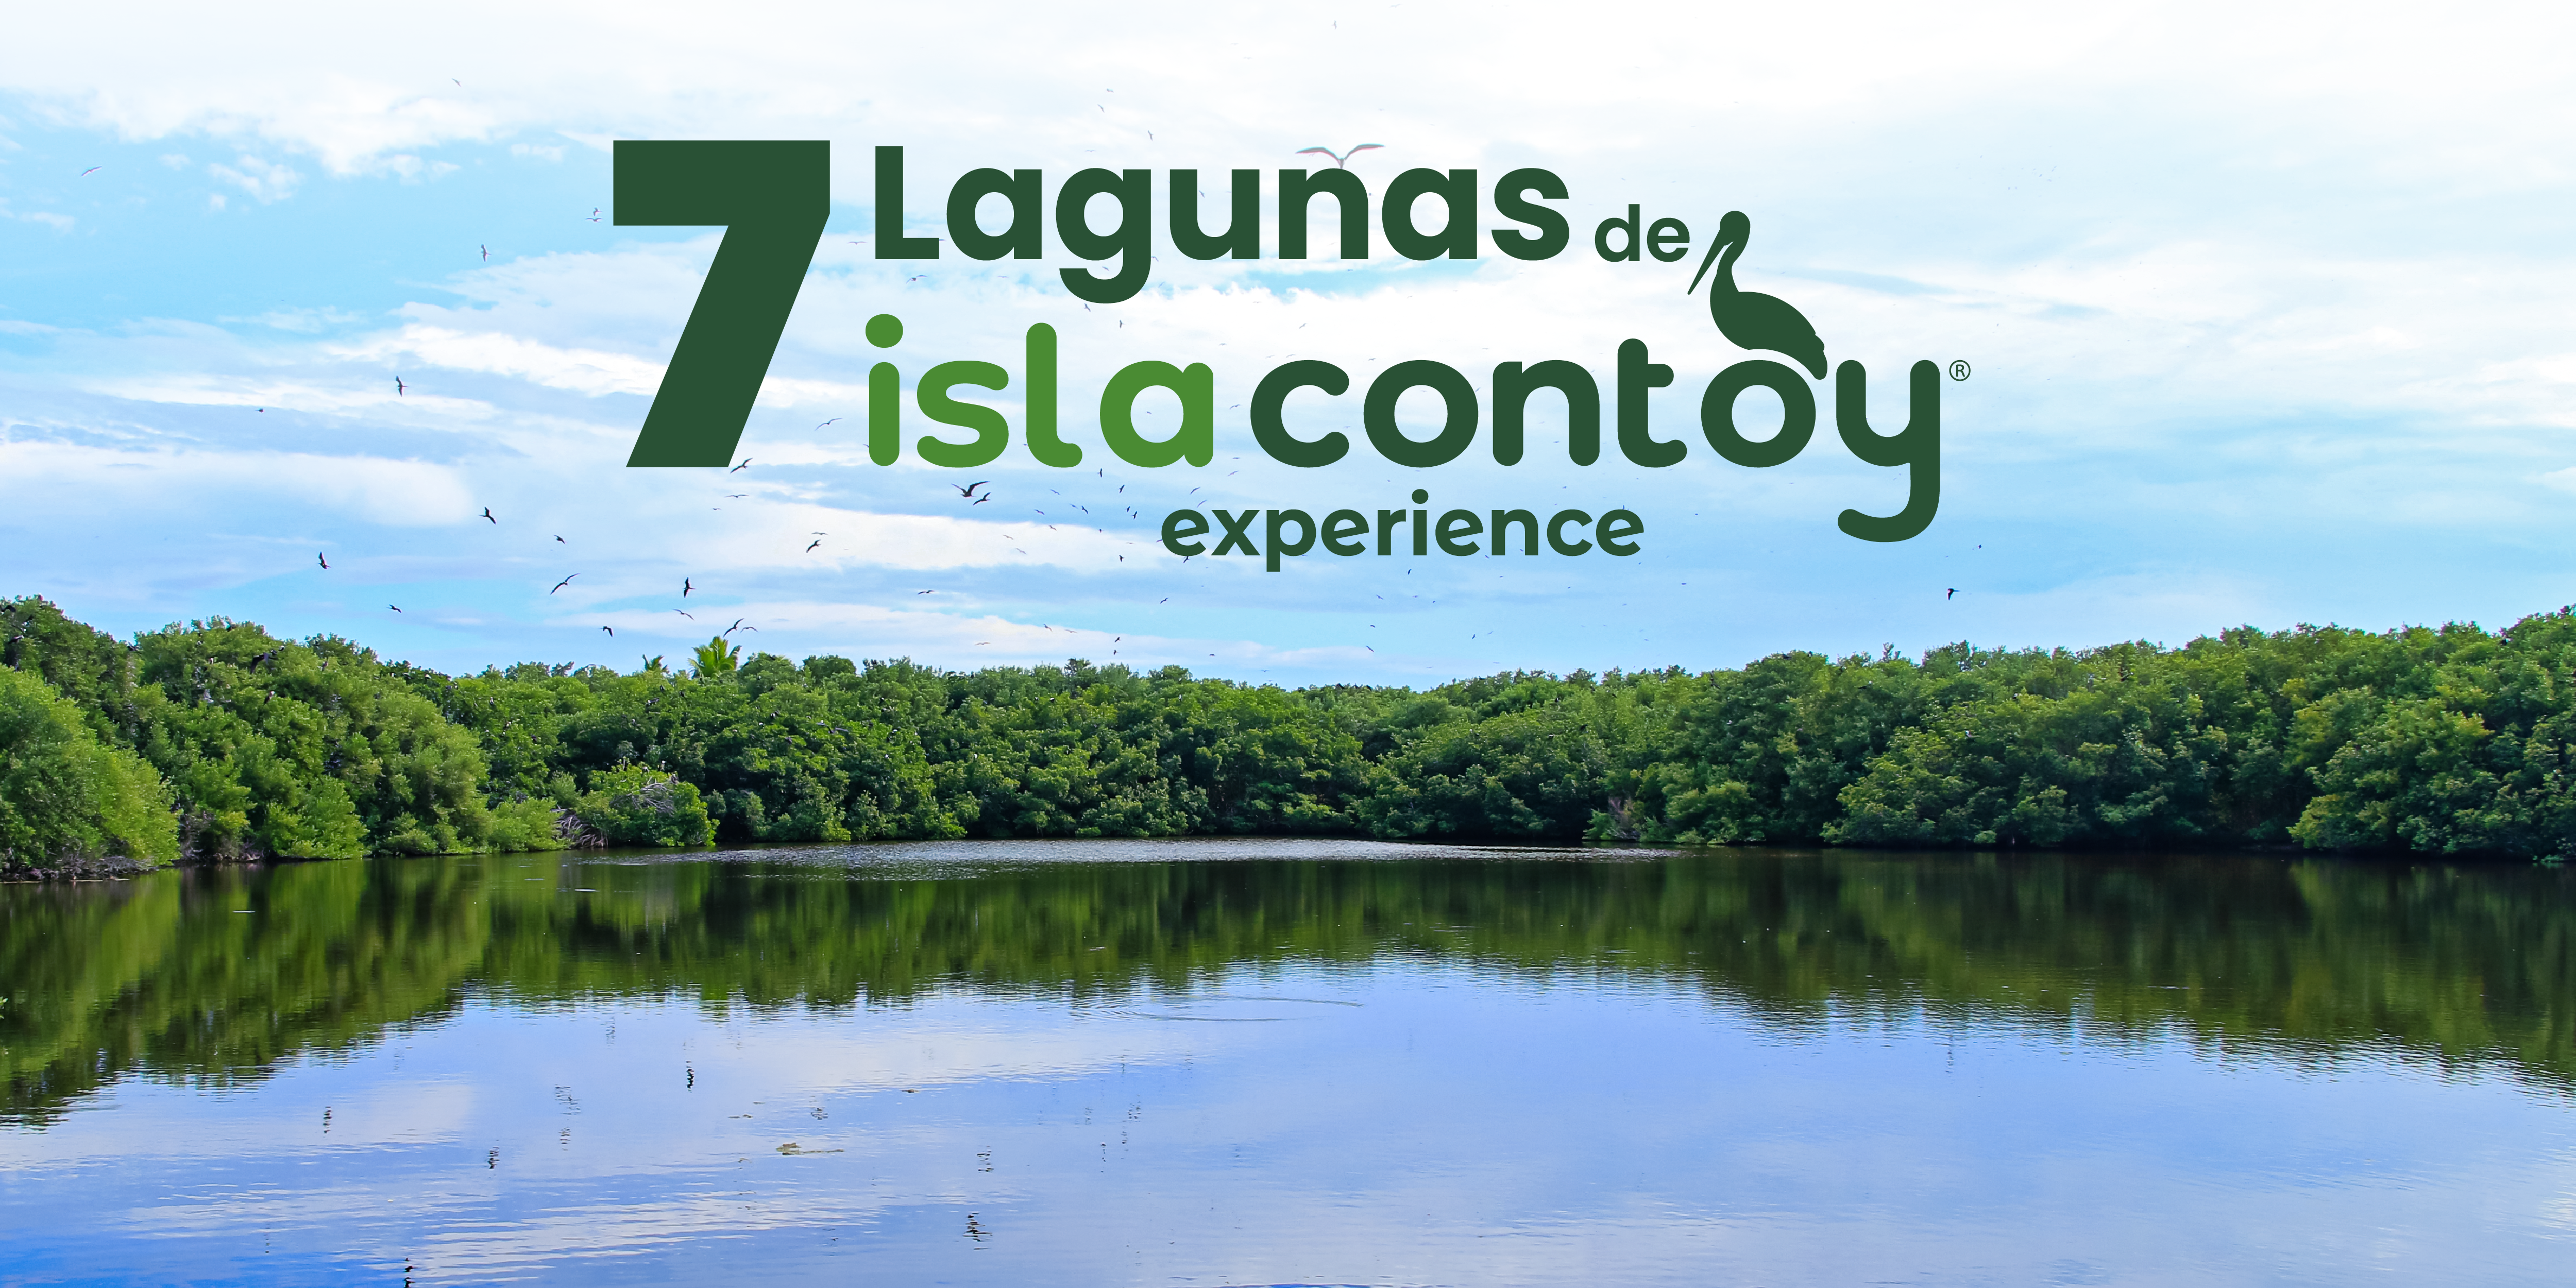 Las 7 lagunas de Isla Contoy